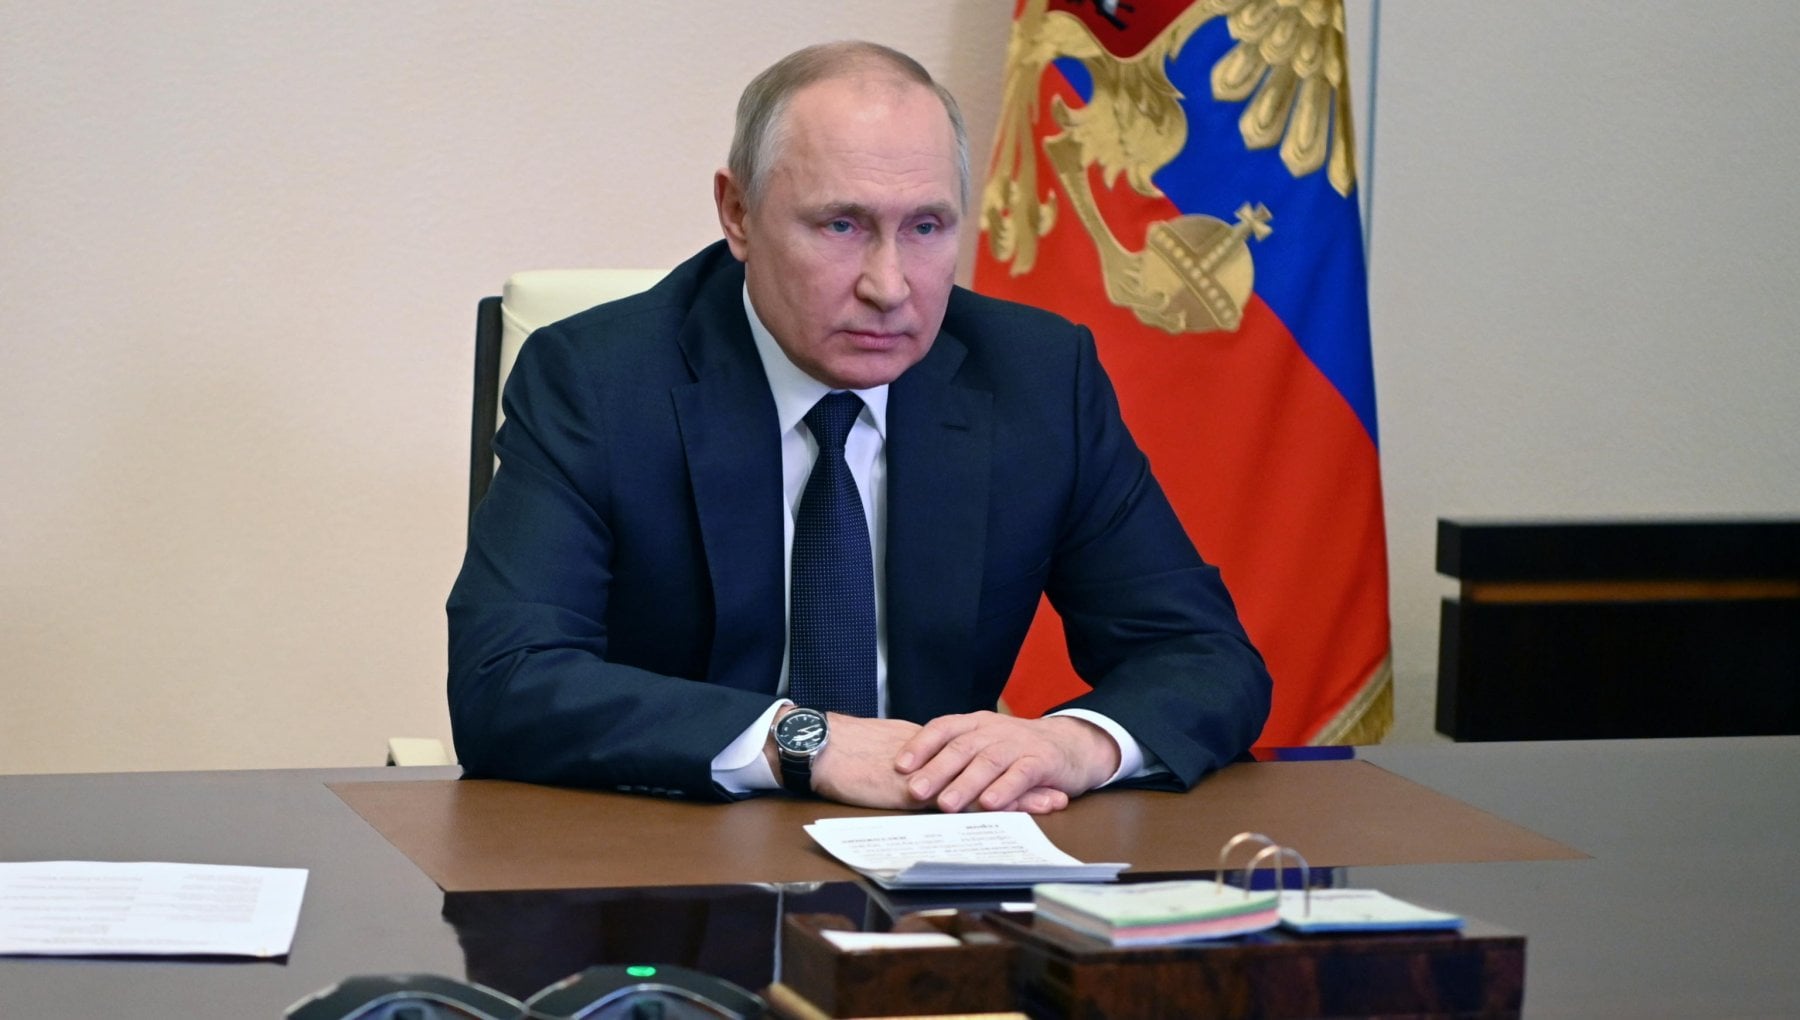 Tổng thống Vladimir Putin cho biết, các lệnh trừng phạt của phương Tây đang làm gián đoạn ngành năng lượng của Nga. Ảnh: @AFP.